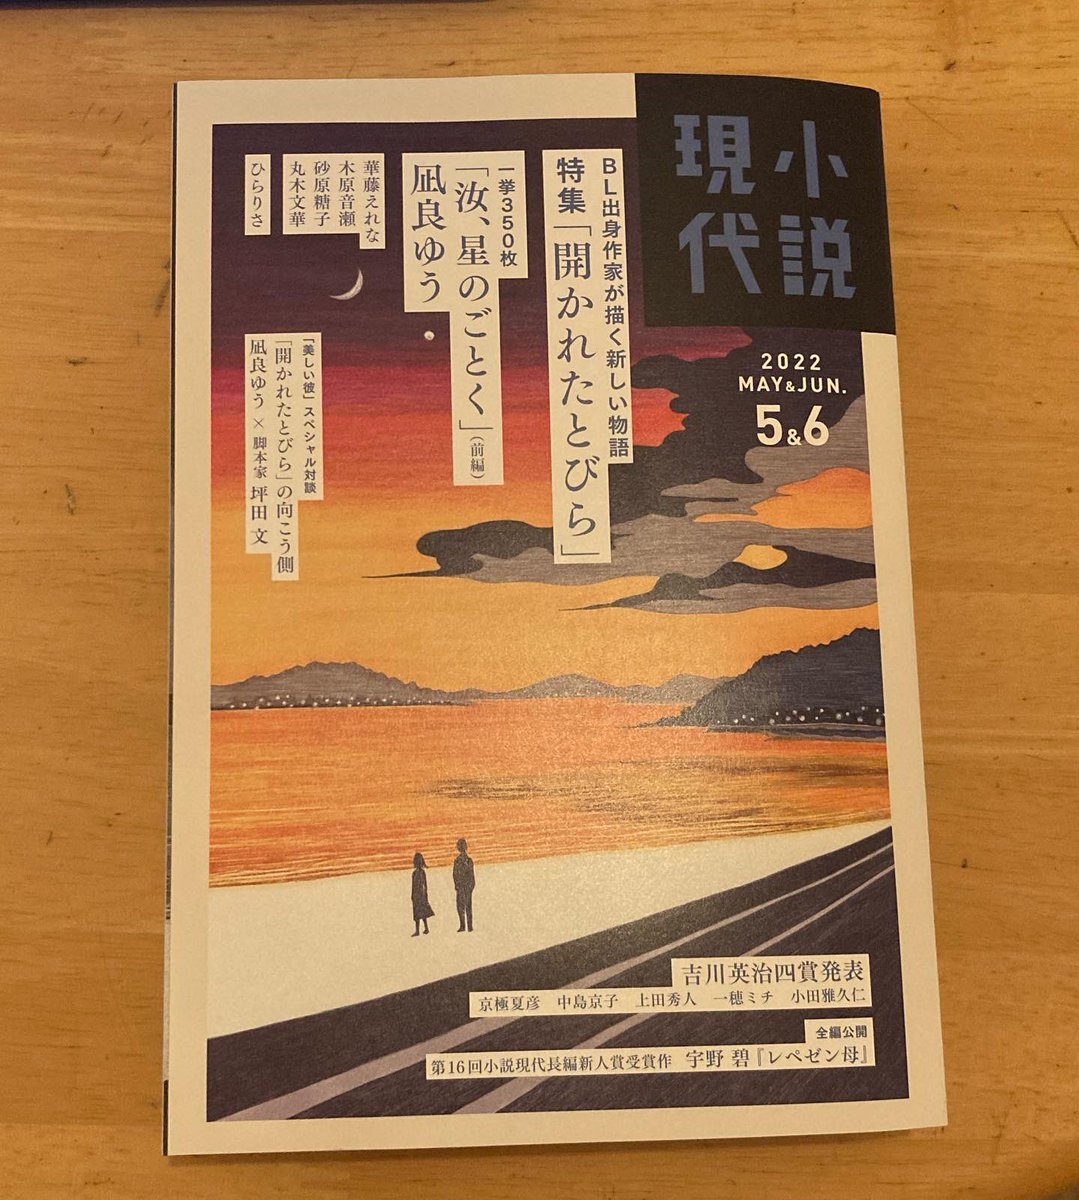 【お仕事】
小説現代 5・6月号(講談社)にて、君嶋彼方さんの読み切り「走れ茜色」の扉絵を担当しました。
駆け抜ける二人のラストに注目です。 